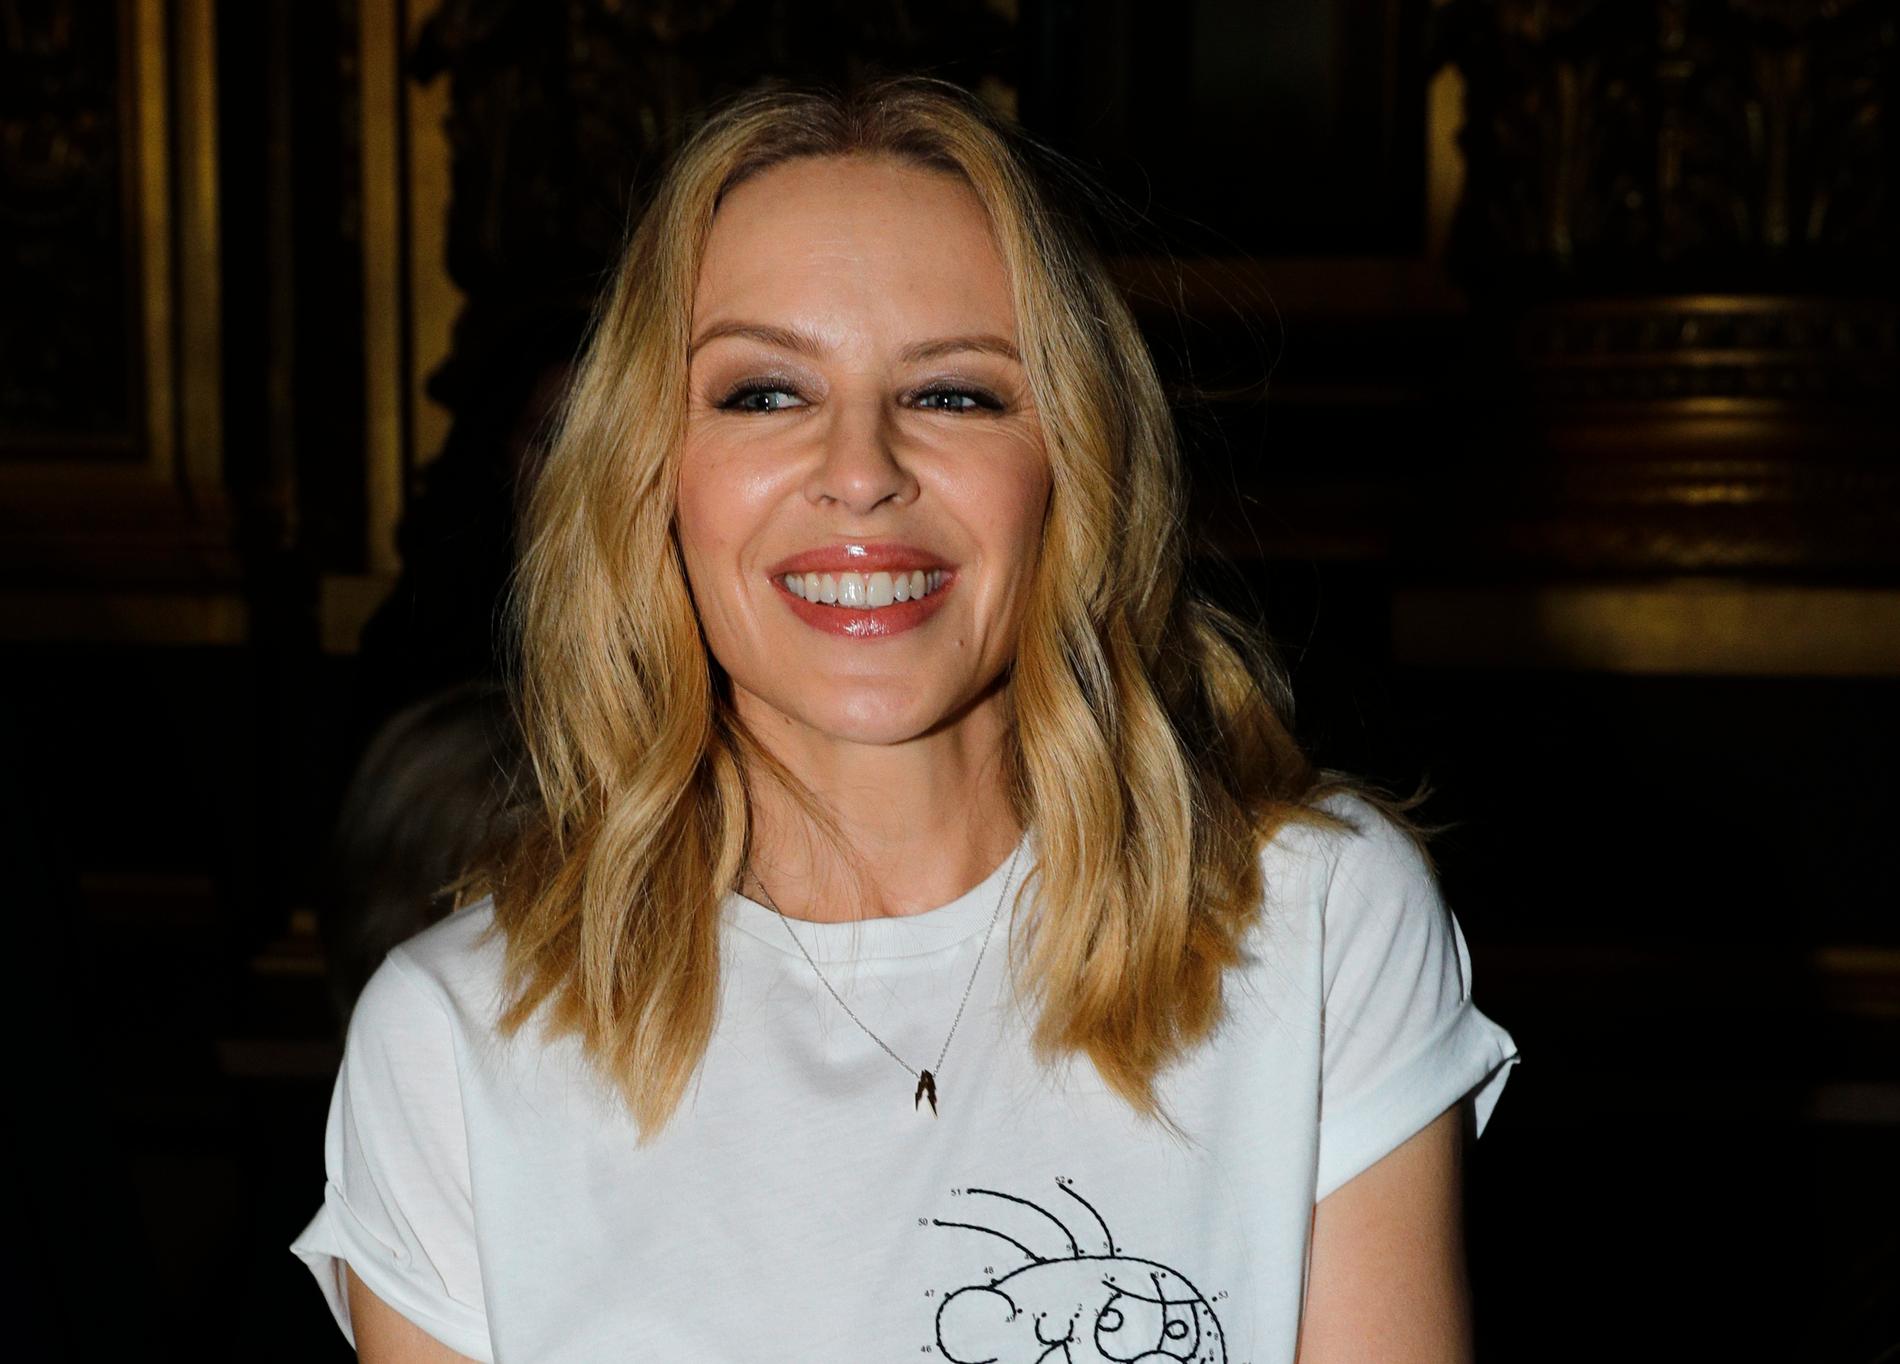 Kylie Minogue släpper ett discoalbum. "Disco är alltid återkommande, det kommer alltid att spelas på fester och firanden, oavsett om det är en Mark Ronson-version, Bee Gees eller Donna Summer", säger hon. Arkivbild.